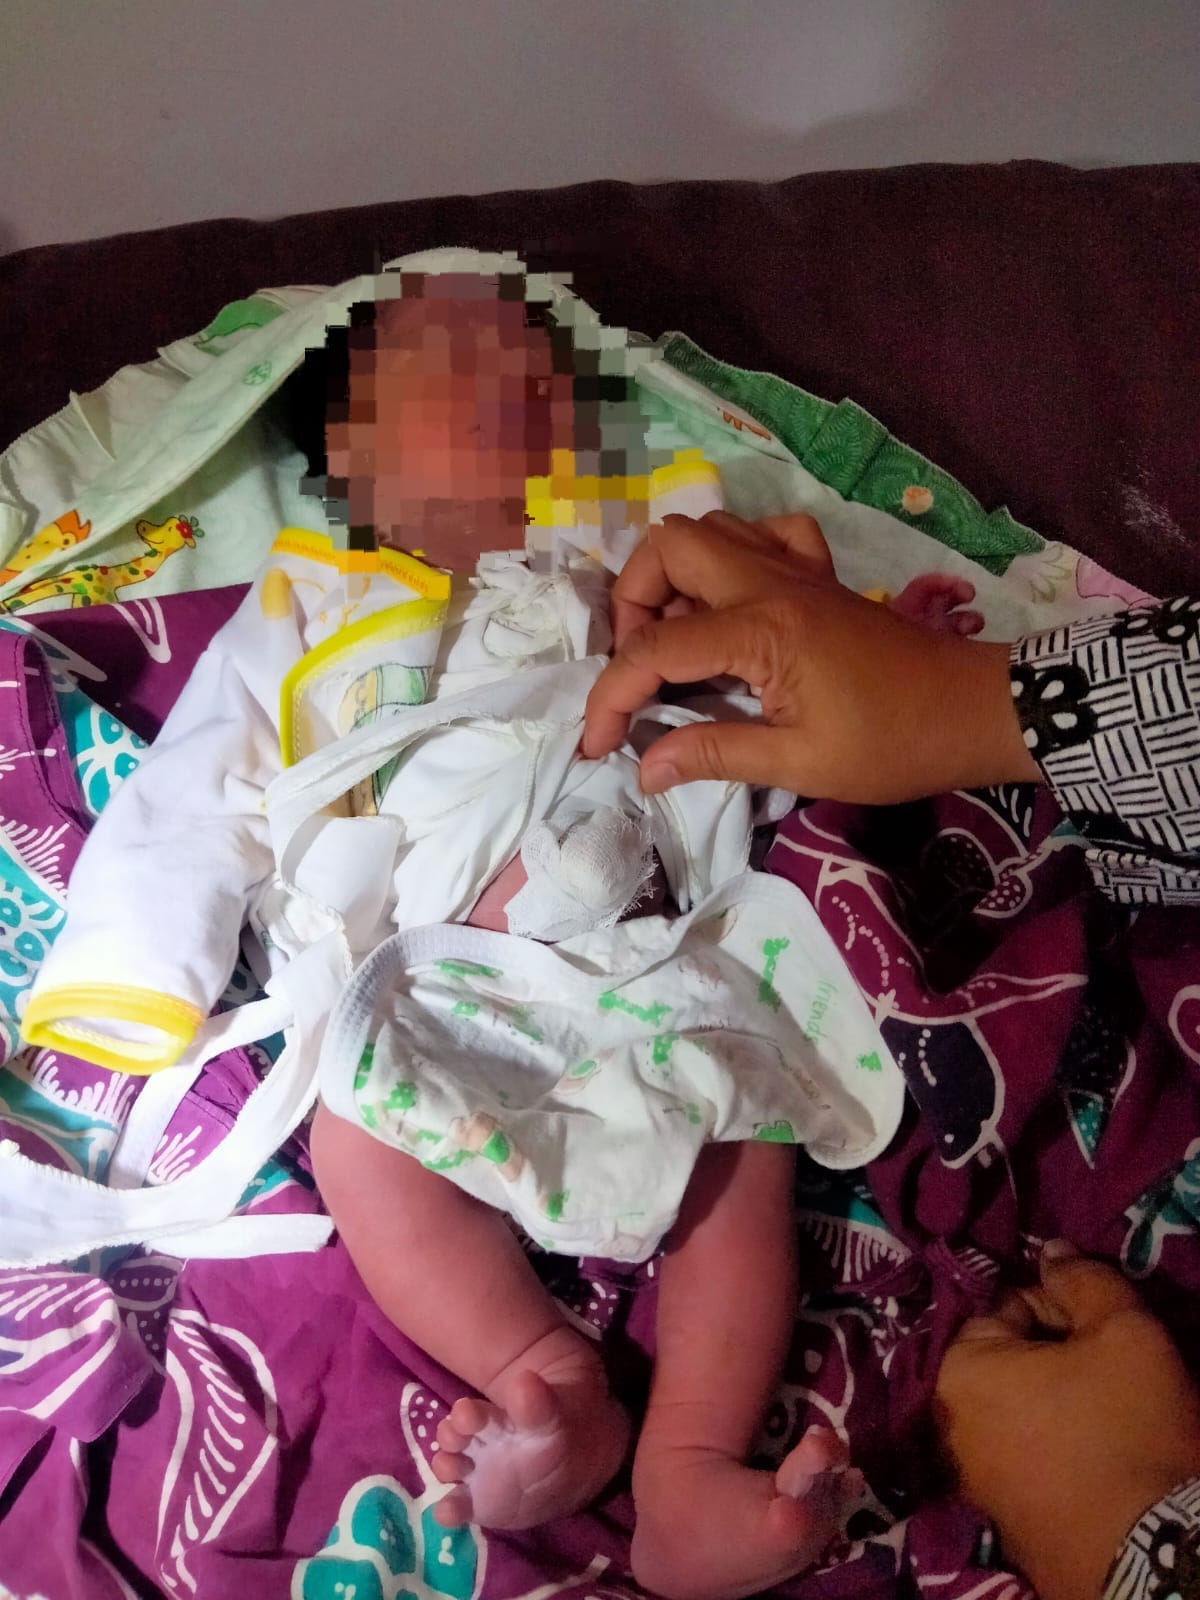 Heboh! Penemuan Bayi Berusia Kurang Dari 24 Jam Dalam Rumah Kosong di Brebes, Begini Kronologinya